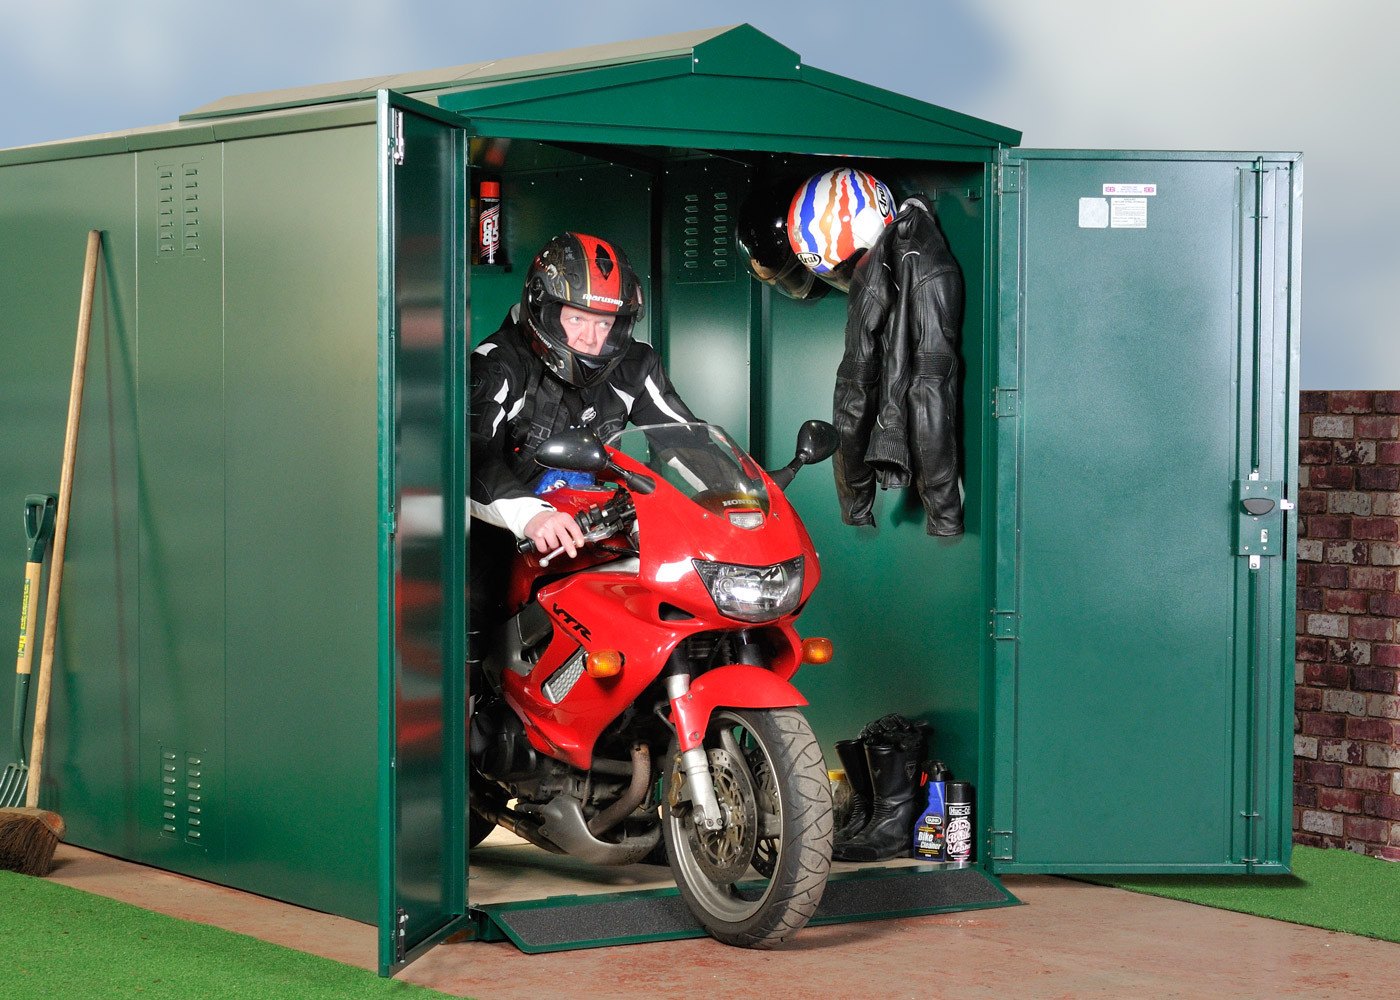 Best ideas about Motorcycle Garage Storage
. Save or Pin Motorcycle Storage Shed 9ft x 5ft 2" Motorbike Garage Now.